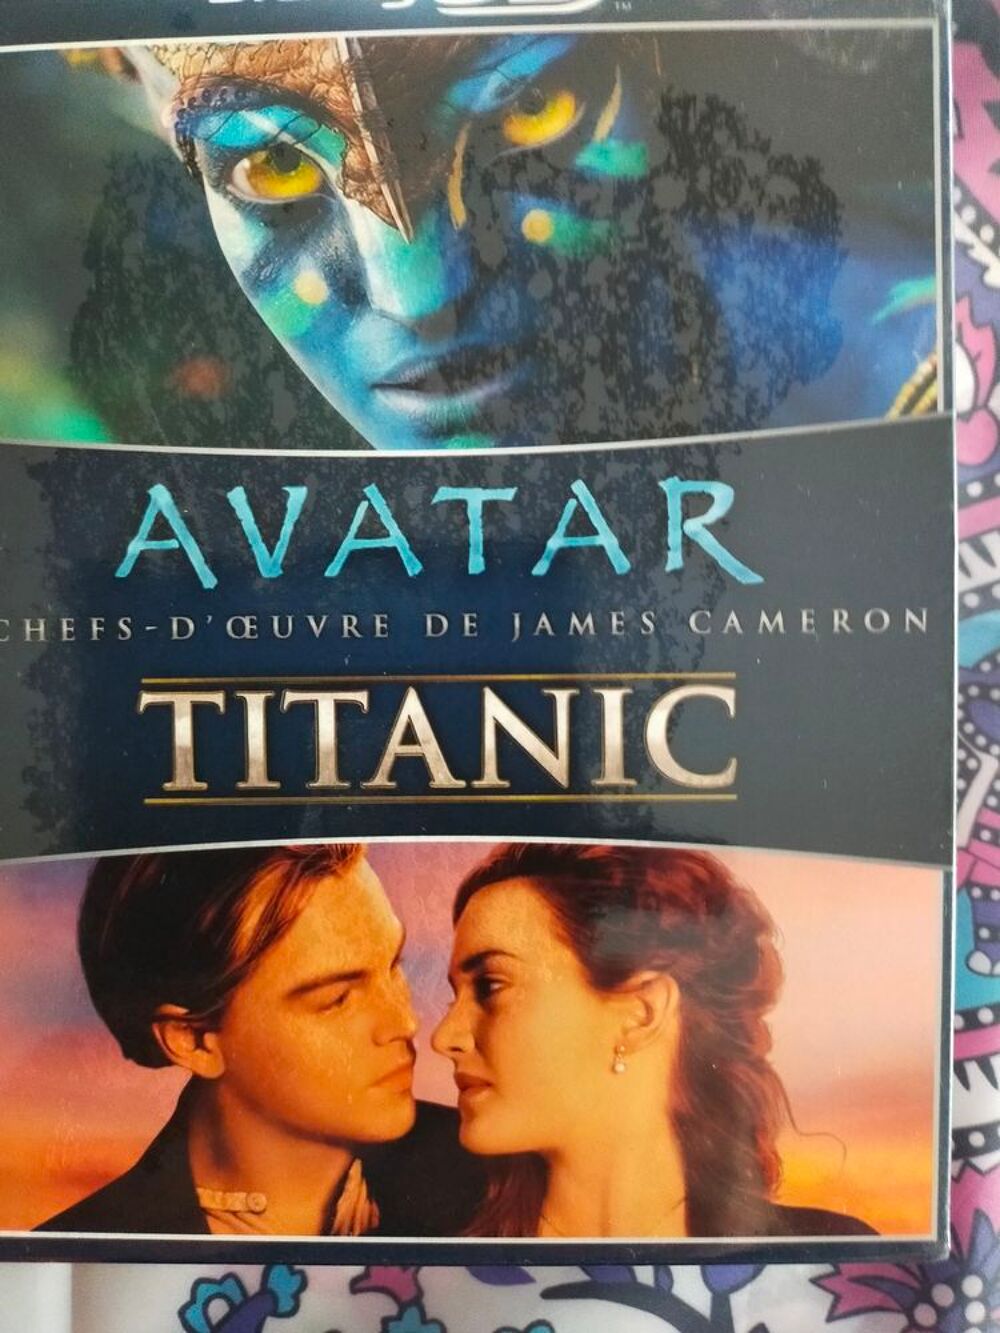 Bonjour
Lot de 2 films sous plastique
Titanic et avatar DVD et blu-ray